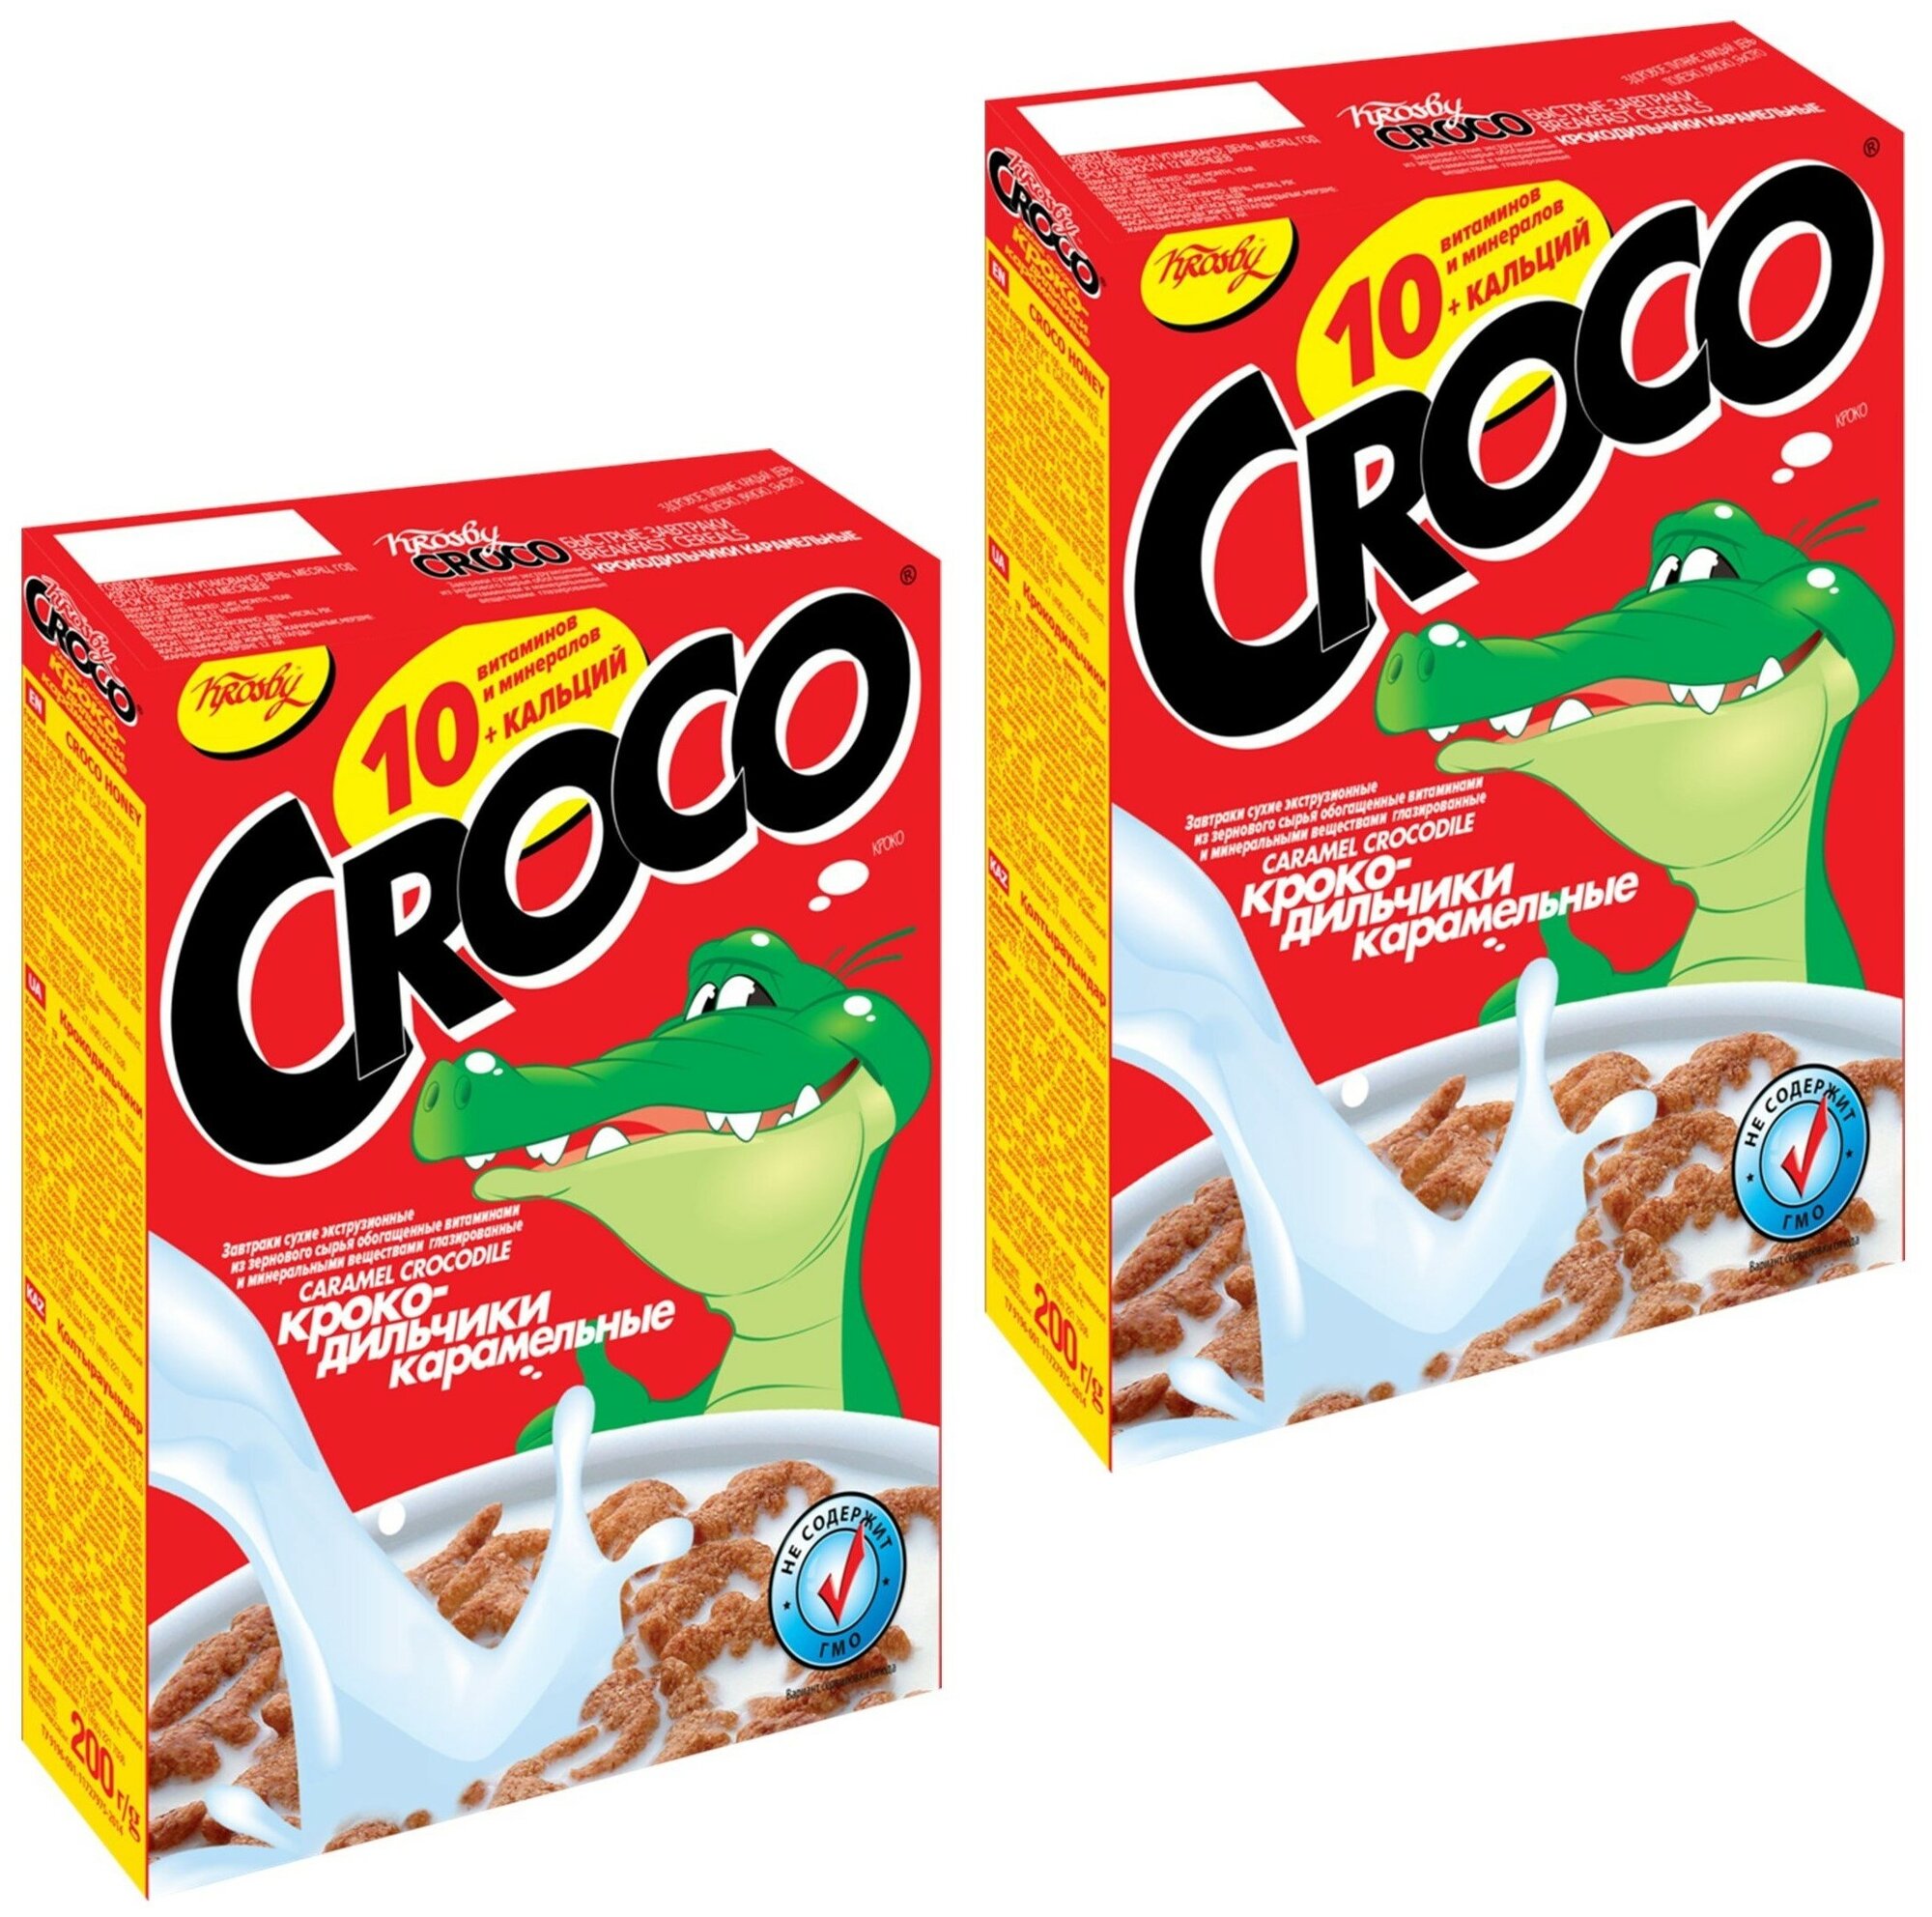 Krosby Croco готовый завтрак сухой крокодильчики карамельные, 200г, 2 упаковки